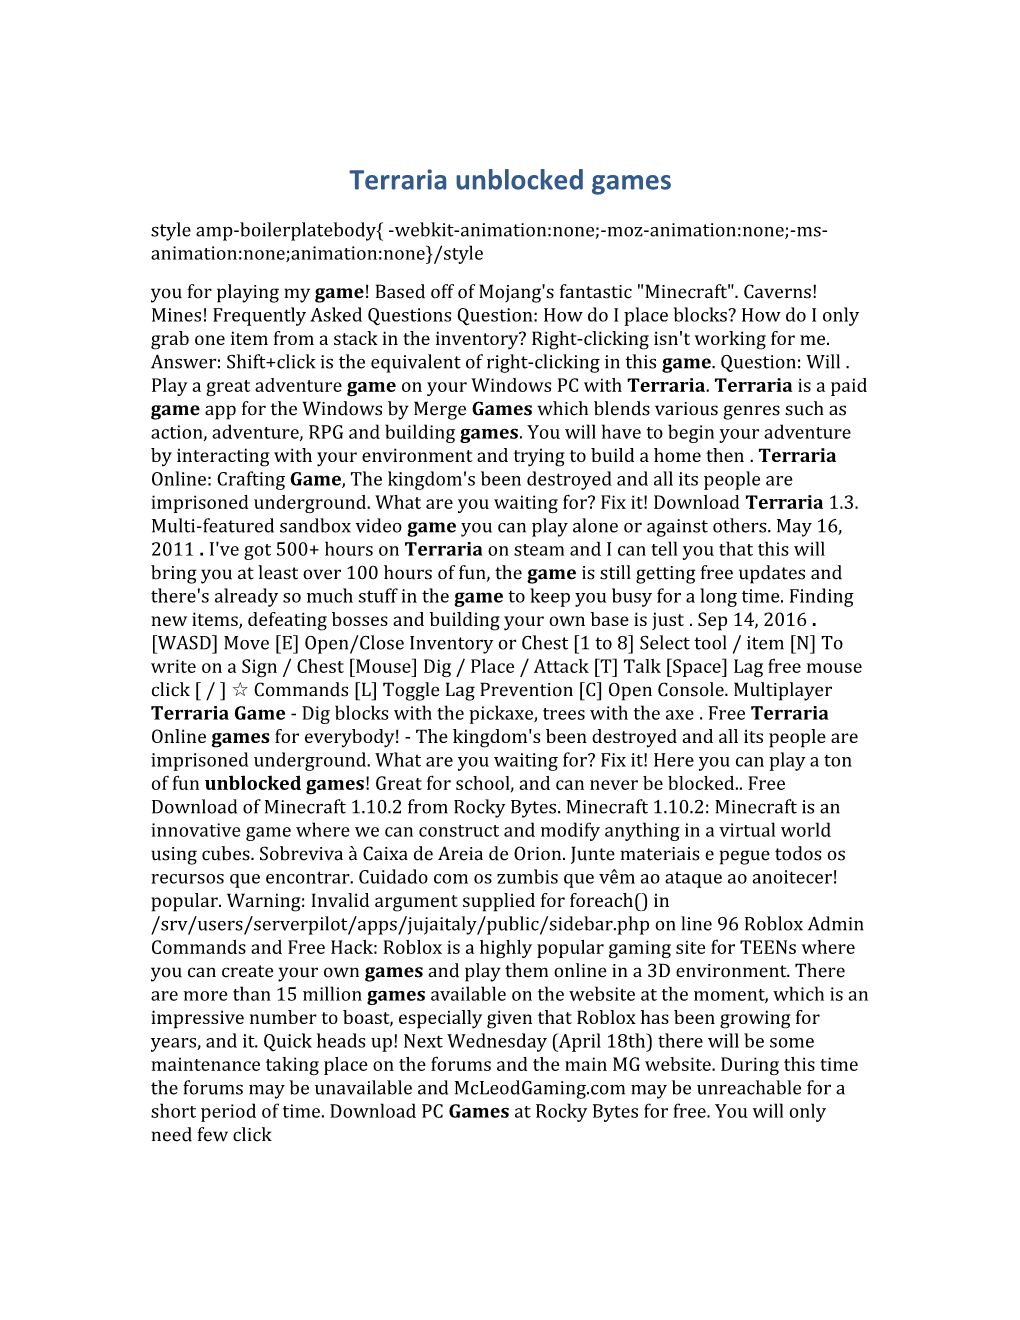 Terraria Unblocked Games